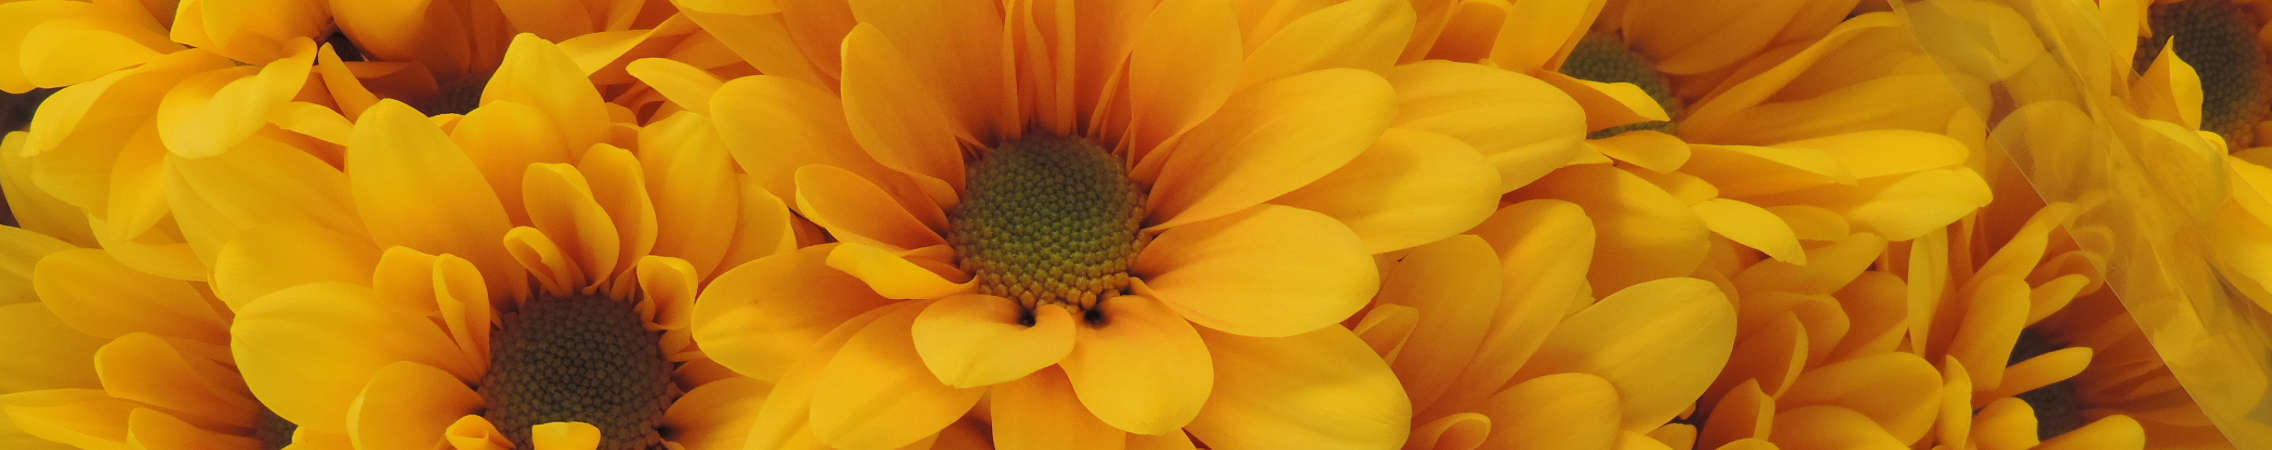 yellow daisy flower in Uniflor's farm